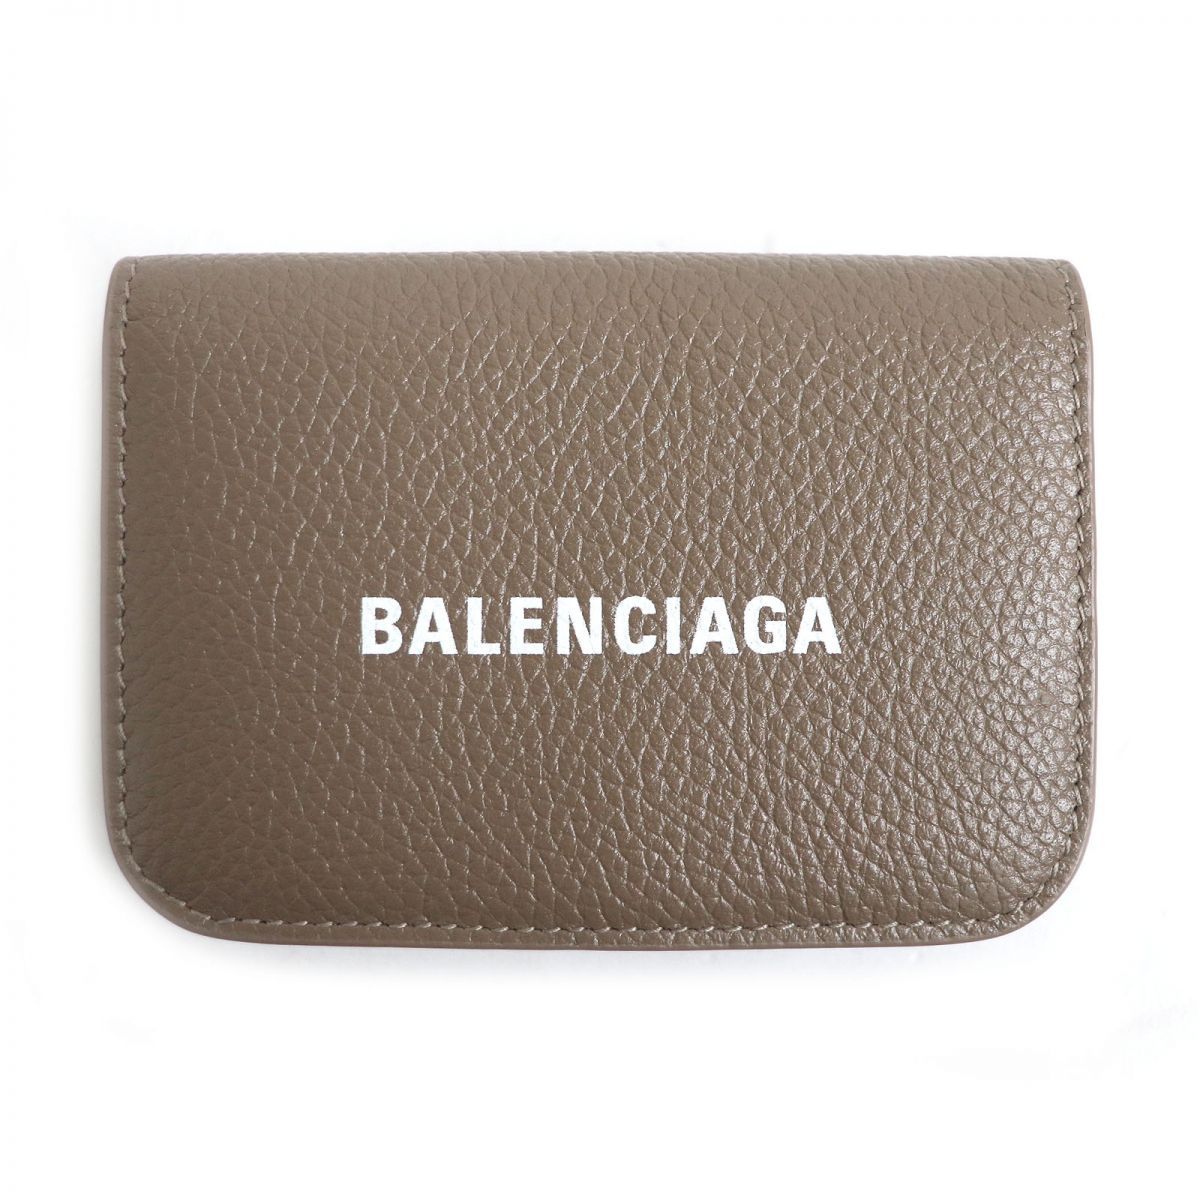 バレンシアガバッグ箱付き【新品未使用】 BALENCIAGA バレンシアガ 折財布 コンパクト